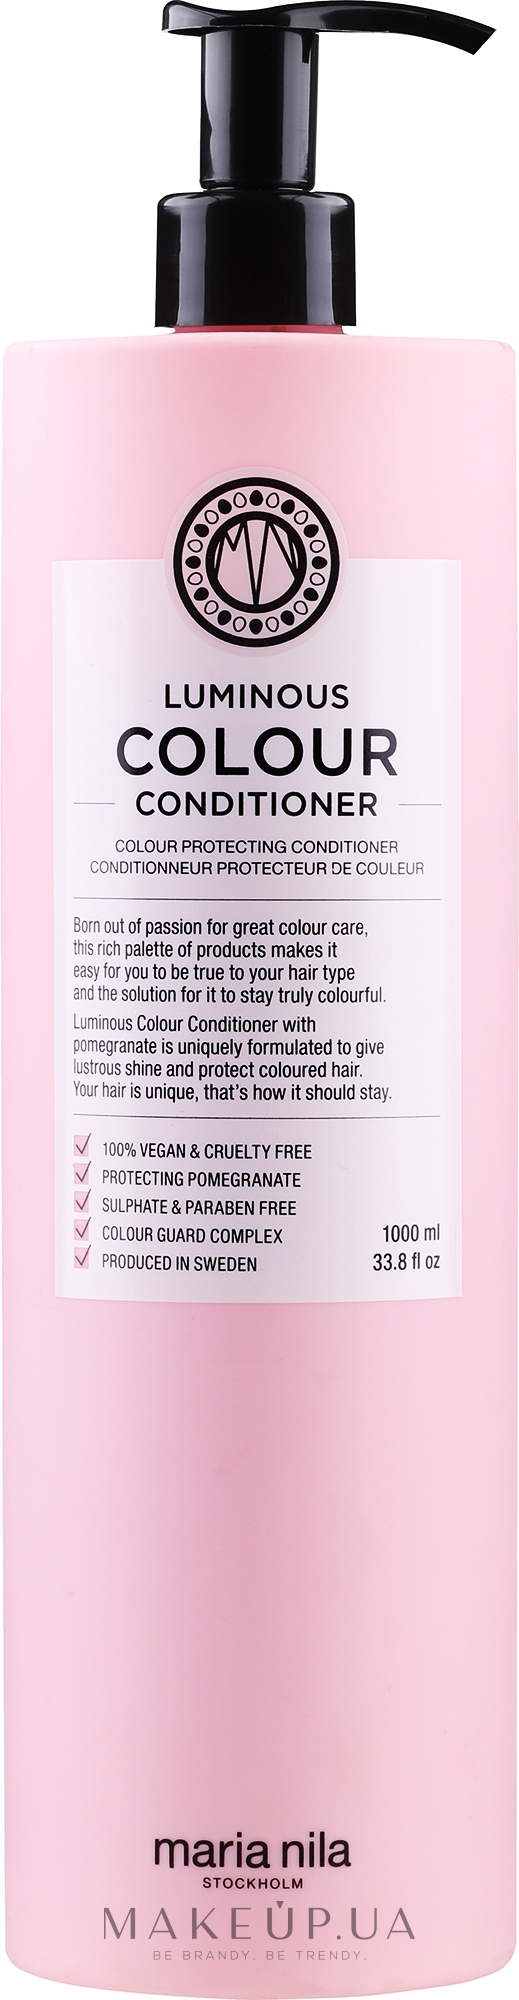 Кондиционер для окрашенных волос - Maria Nila Luminous Color Conditioner  — фото 1000ml